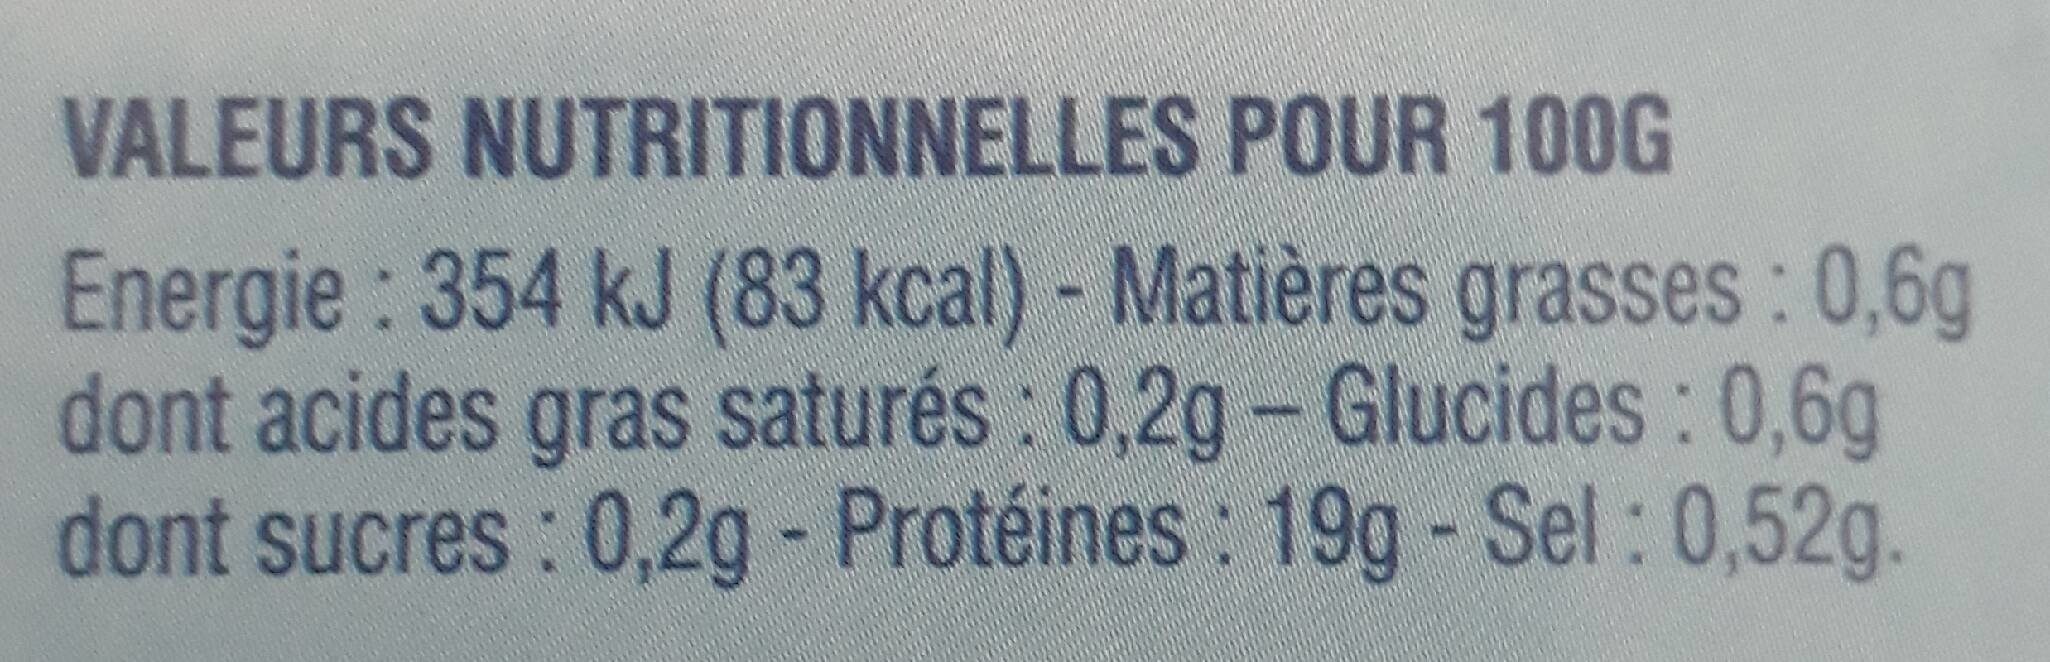 Duo Lotte du Cap & crevettes sauvages surg - Tableau nutritionnel